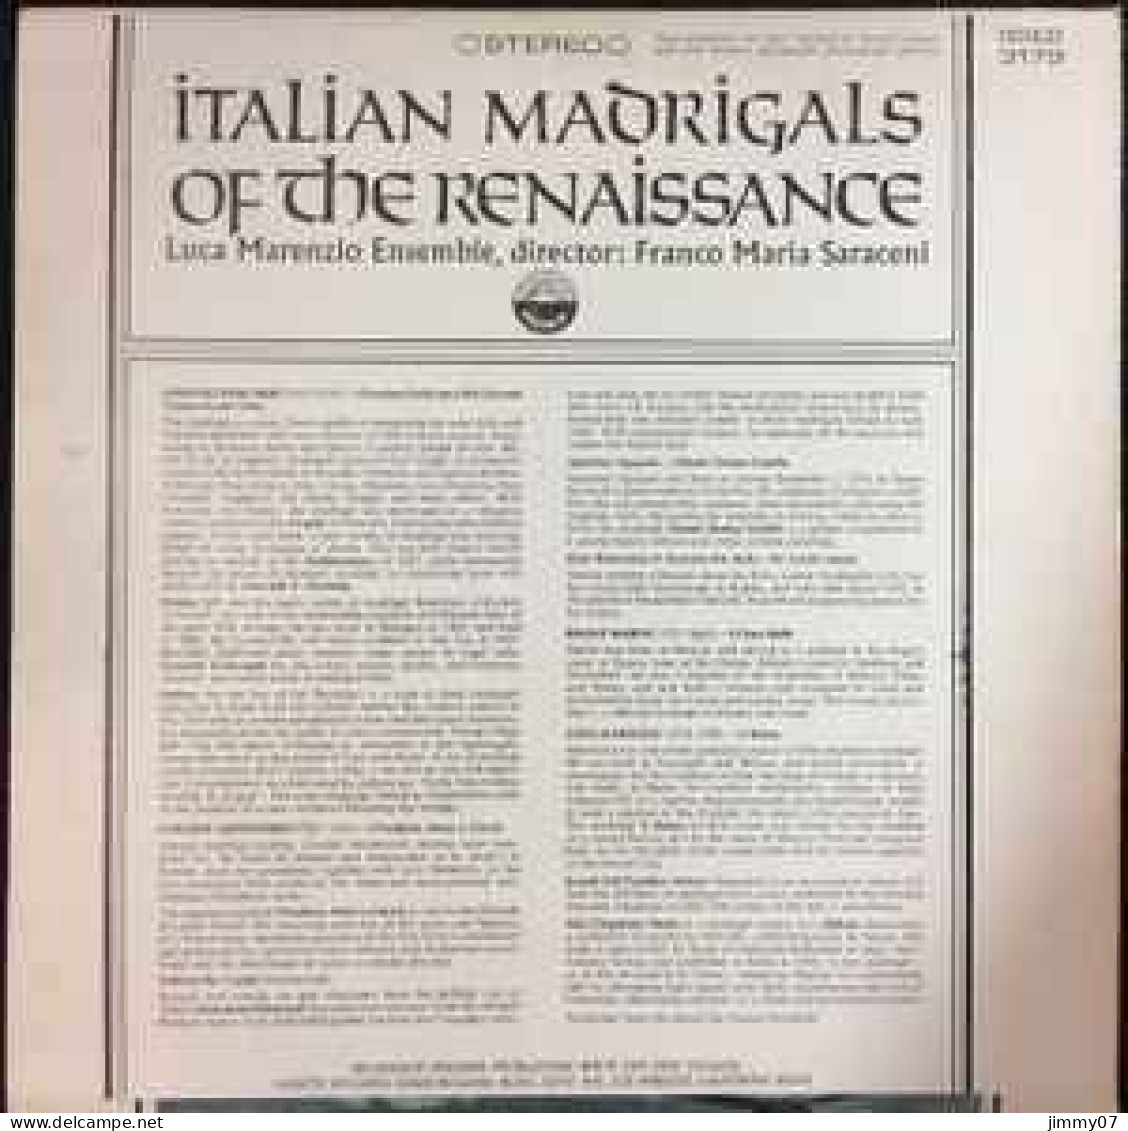 Luca Marenzio Ensemble - Italian Madrigals Of The Renaissance (LP) - Classical